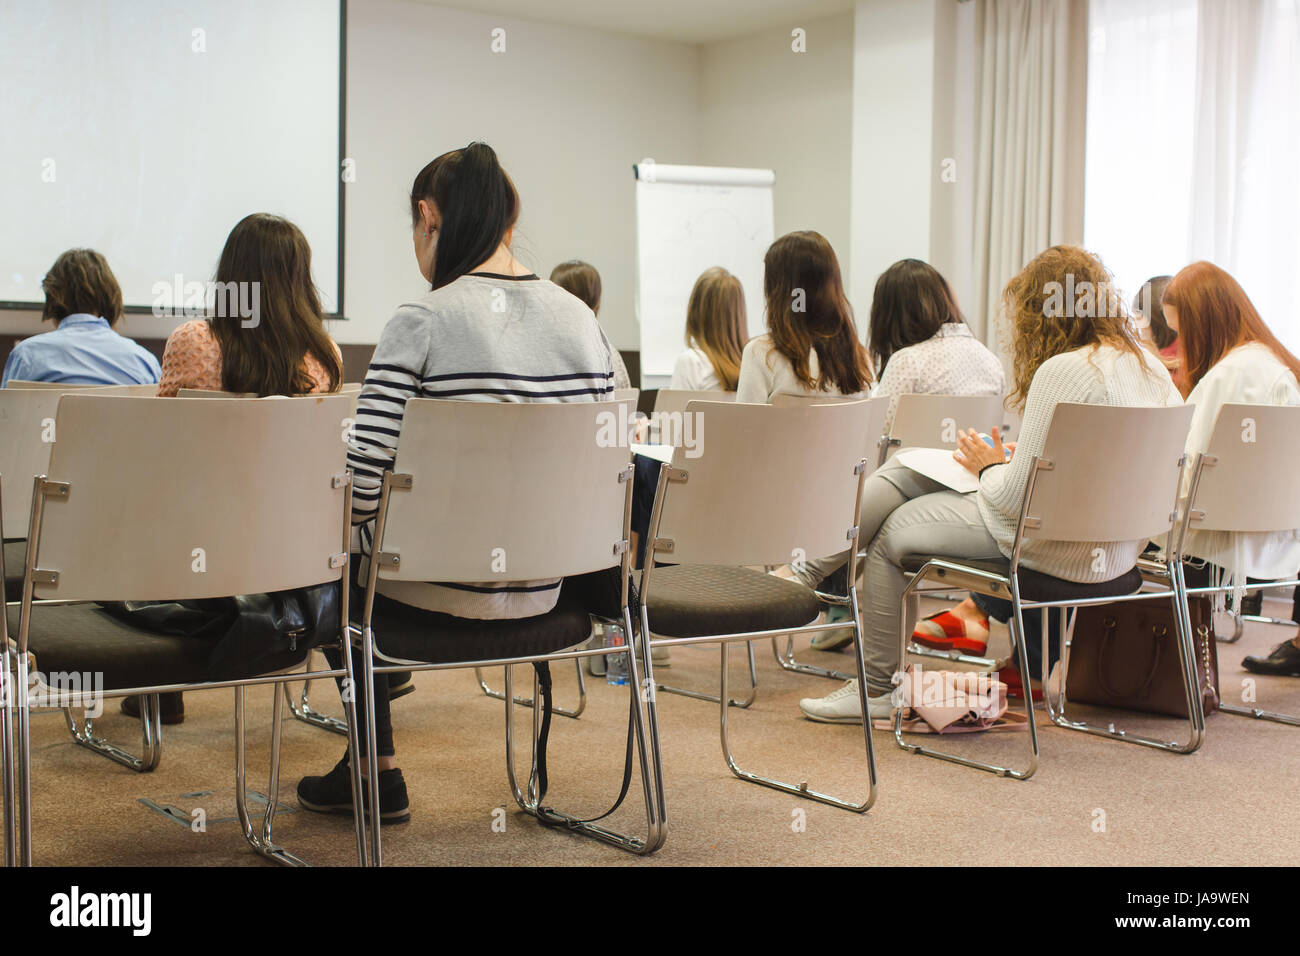 Frauen Student während des Studiums, in der Vorlesung Publikum Stockfoto